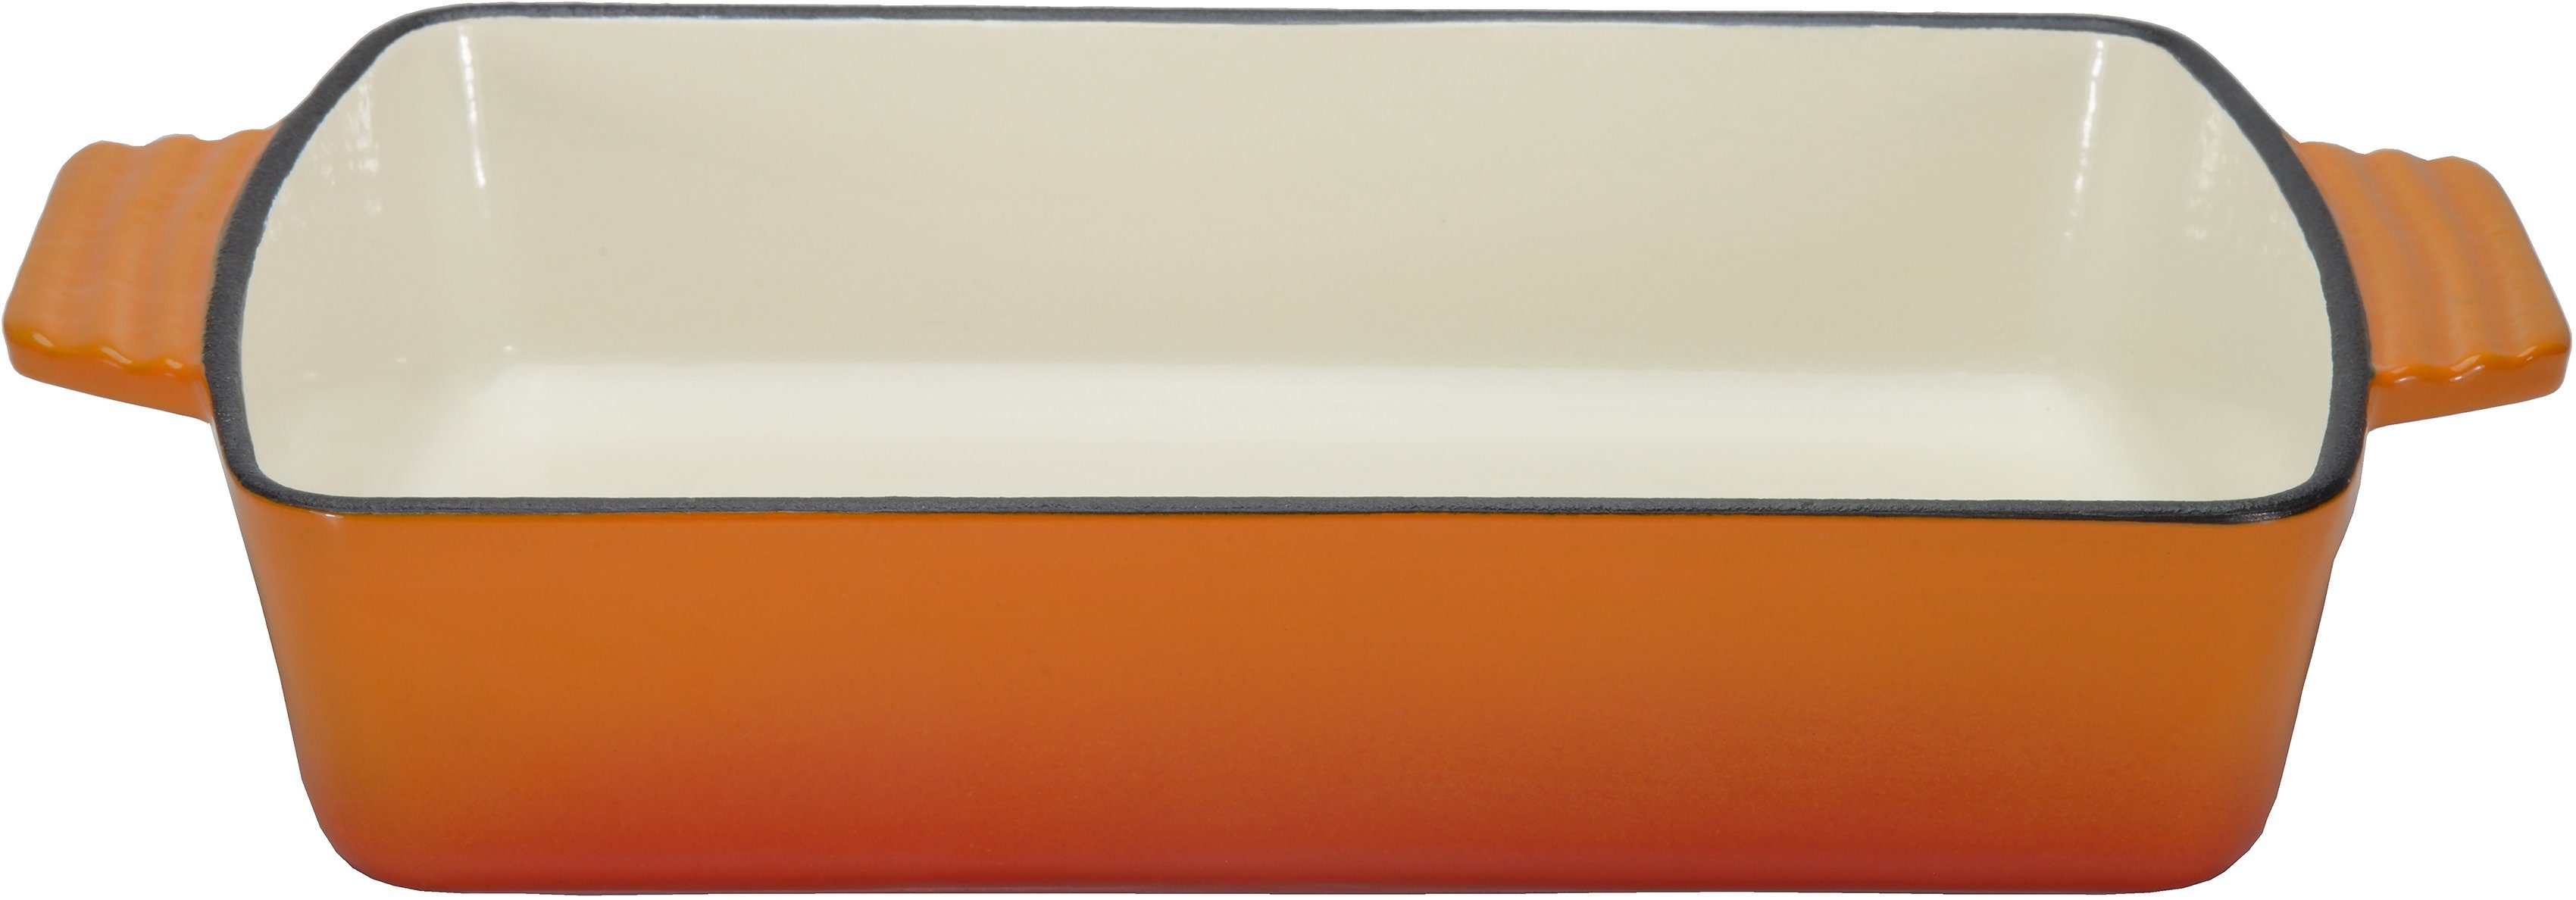 gleichmäßige Shadow, Wärmeverteilung GSW -speicherung und Liter, Auflaufform für Orange Gusseisen, 3,8